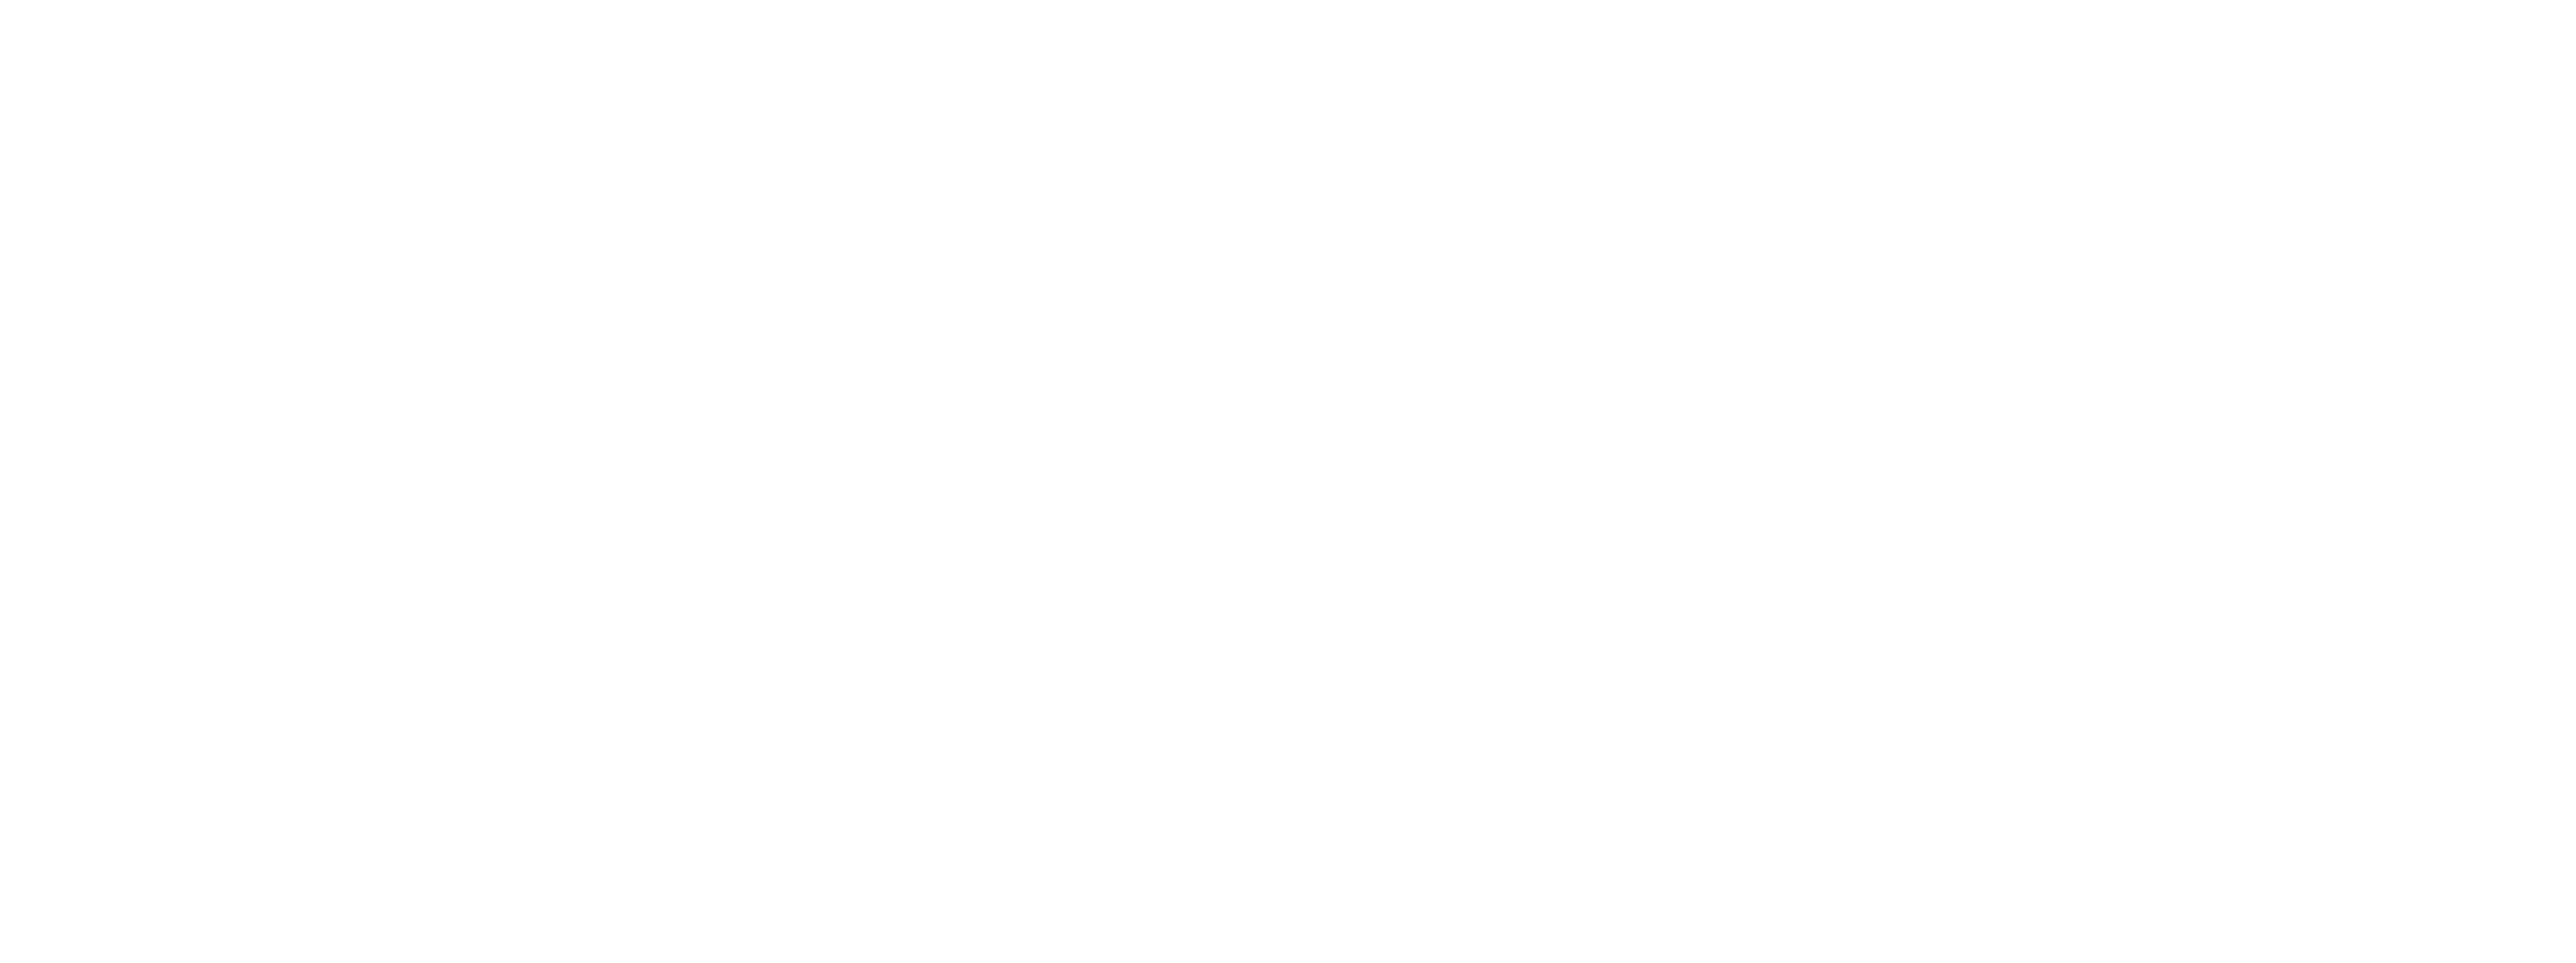 Radisson | Audium | Audiovisuele producties en verhuur op broadcastmarkt Ranst